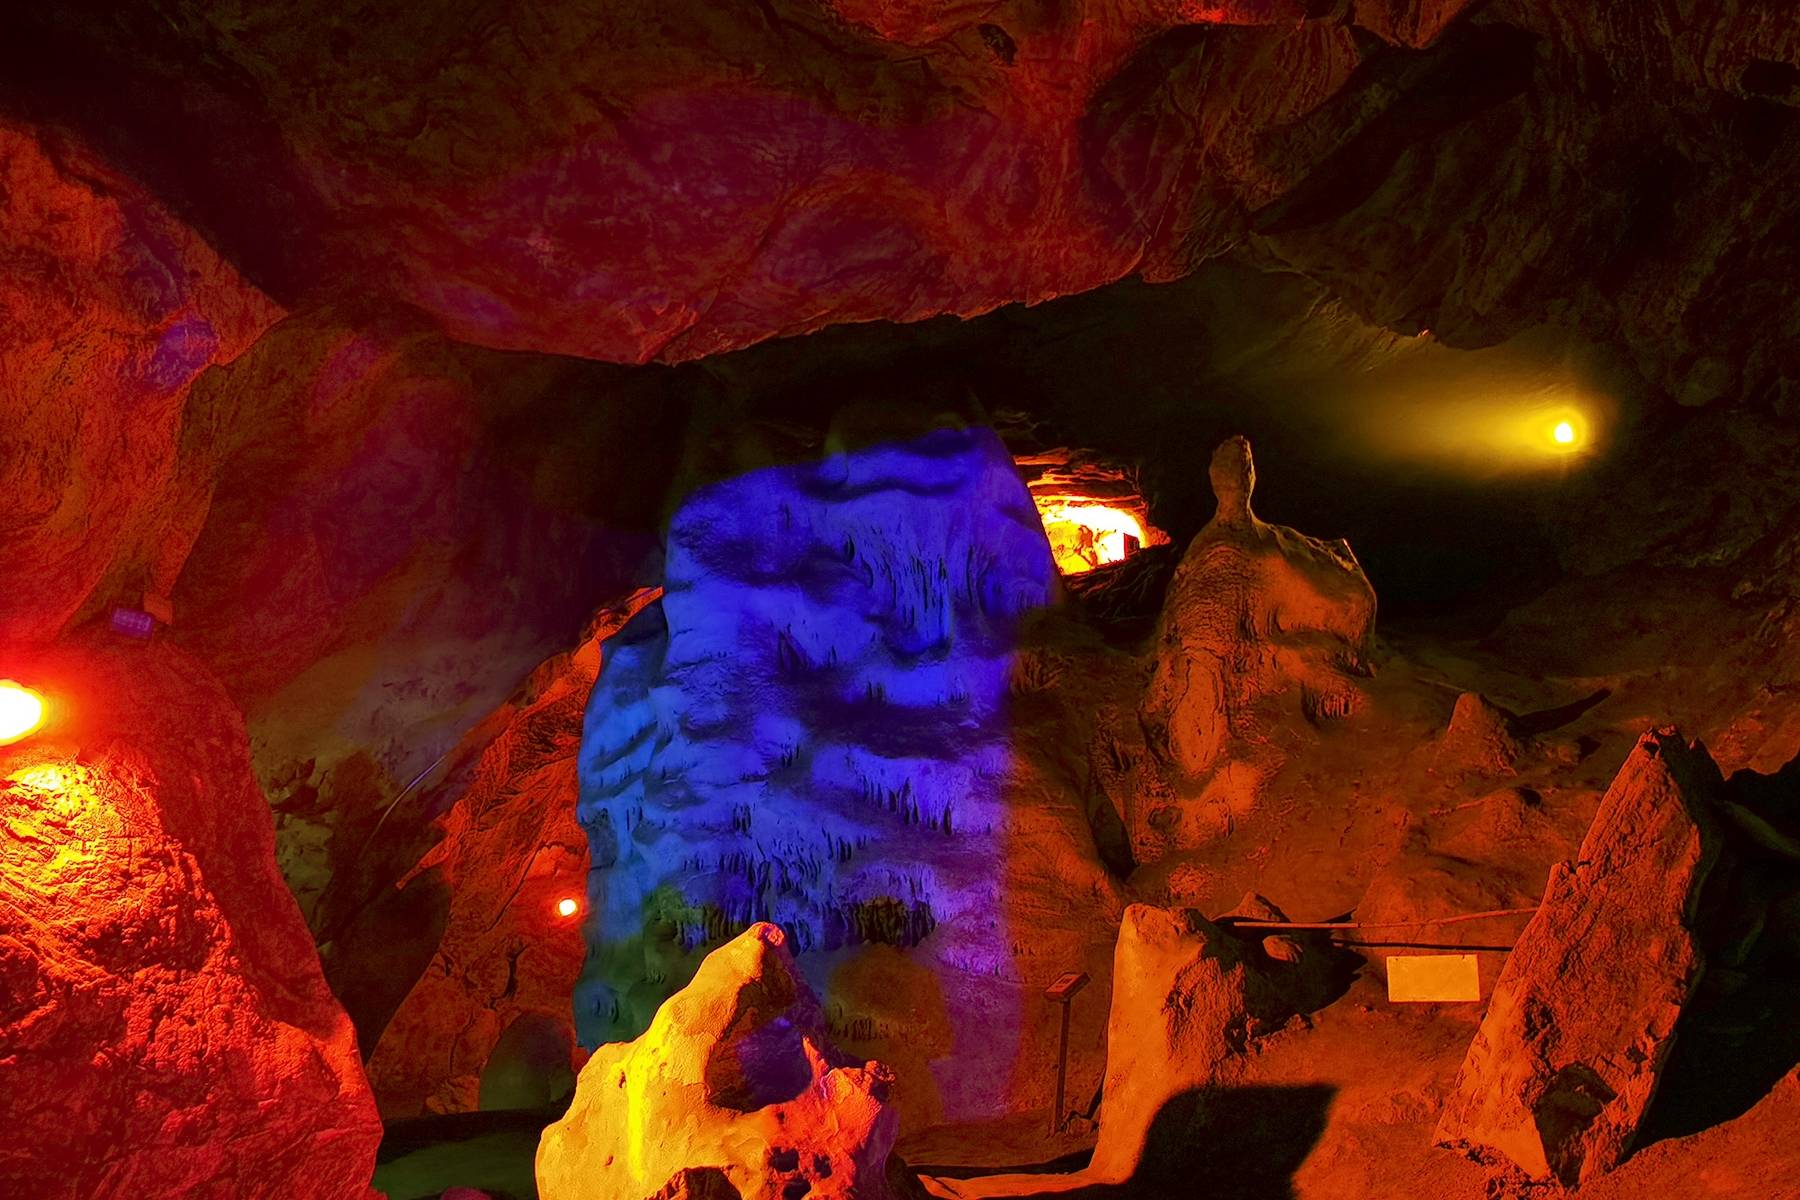 原创西安辋川溶洞,市民可免费观赏9000万年堆积的自然景观